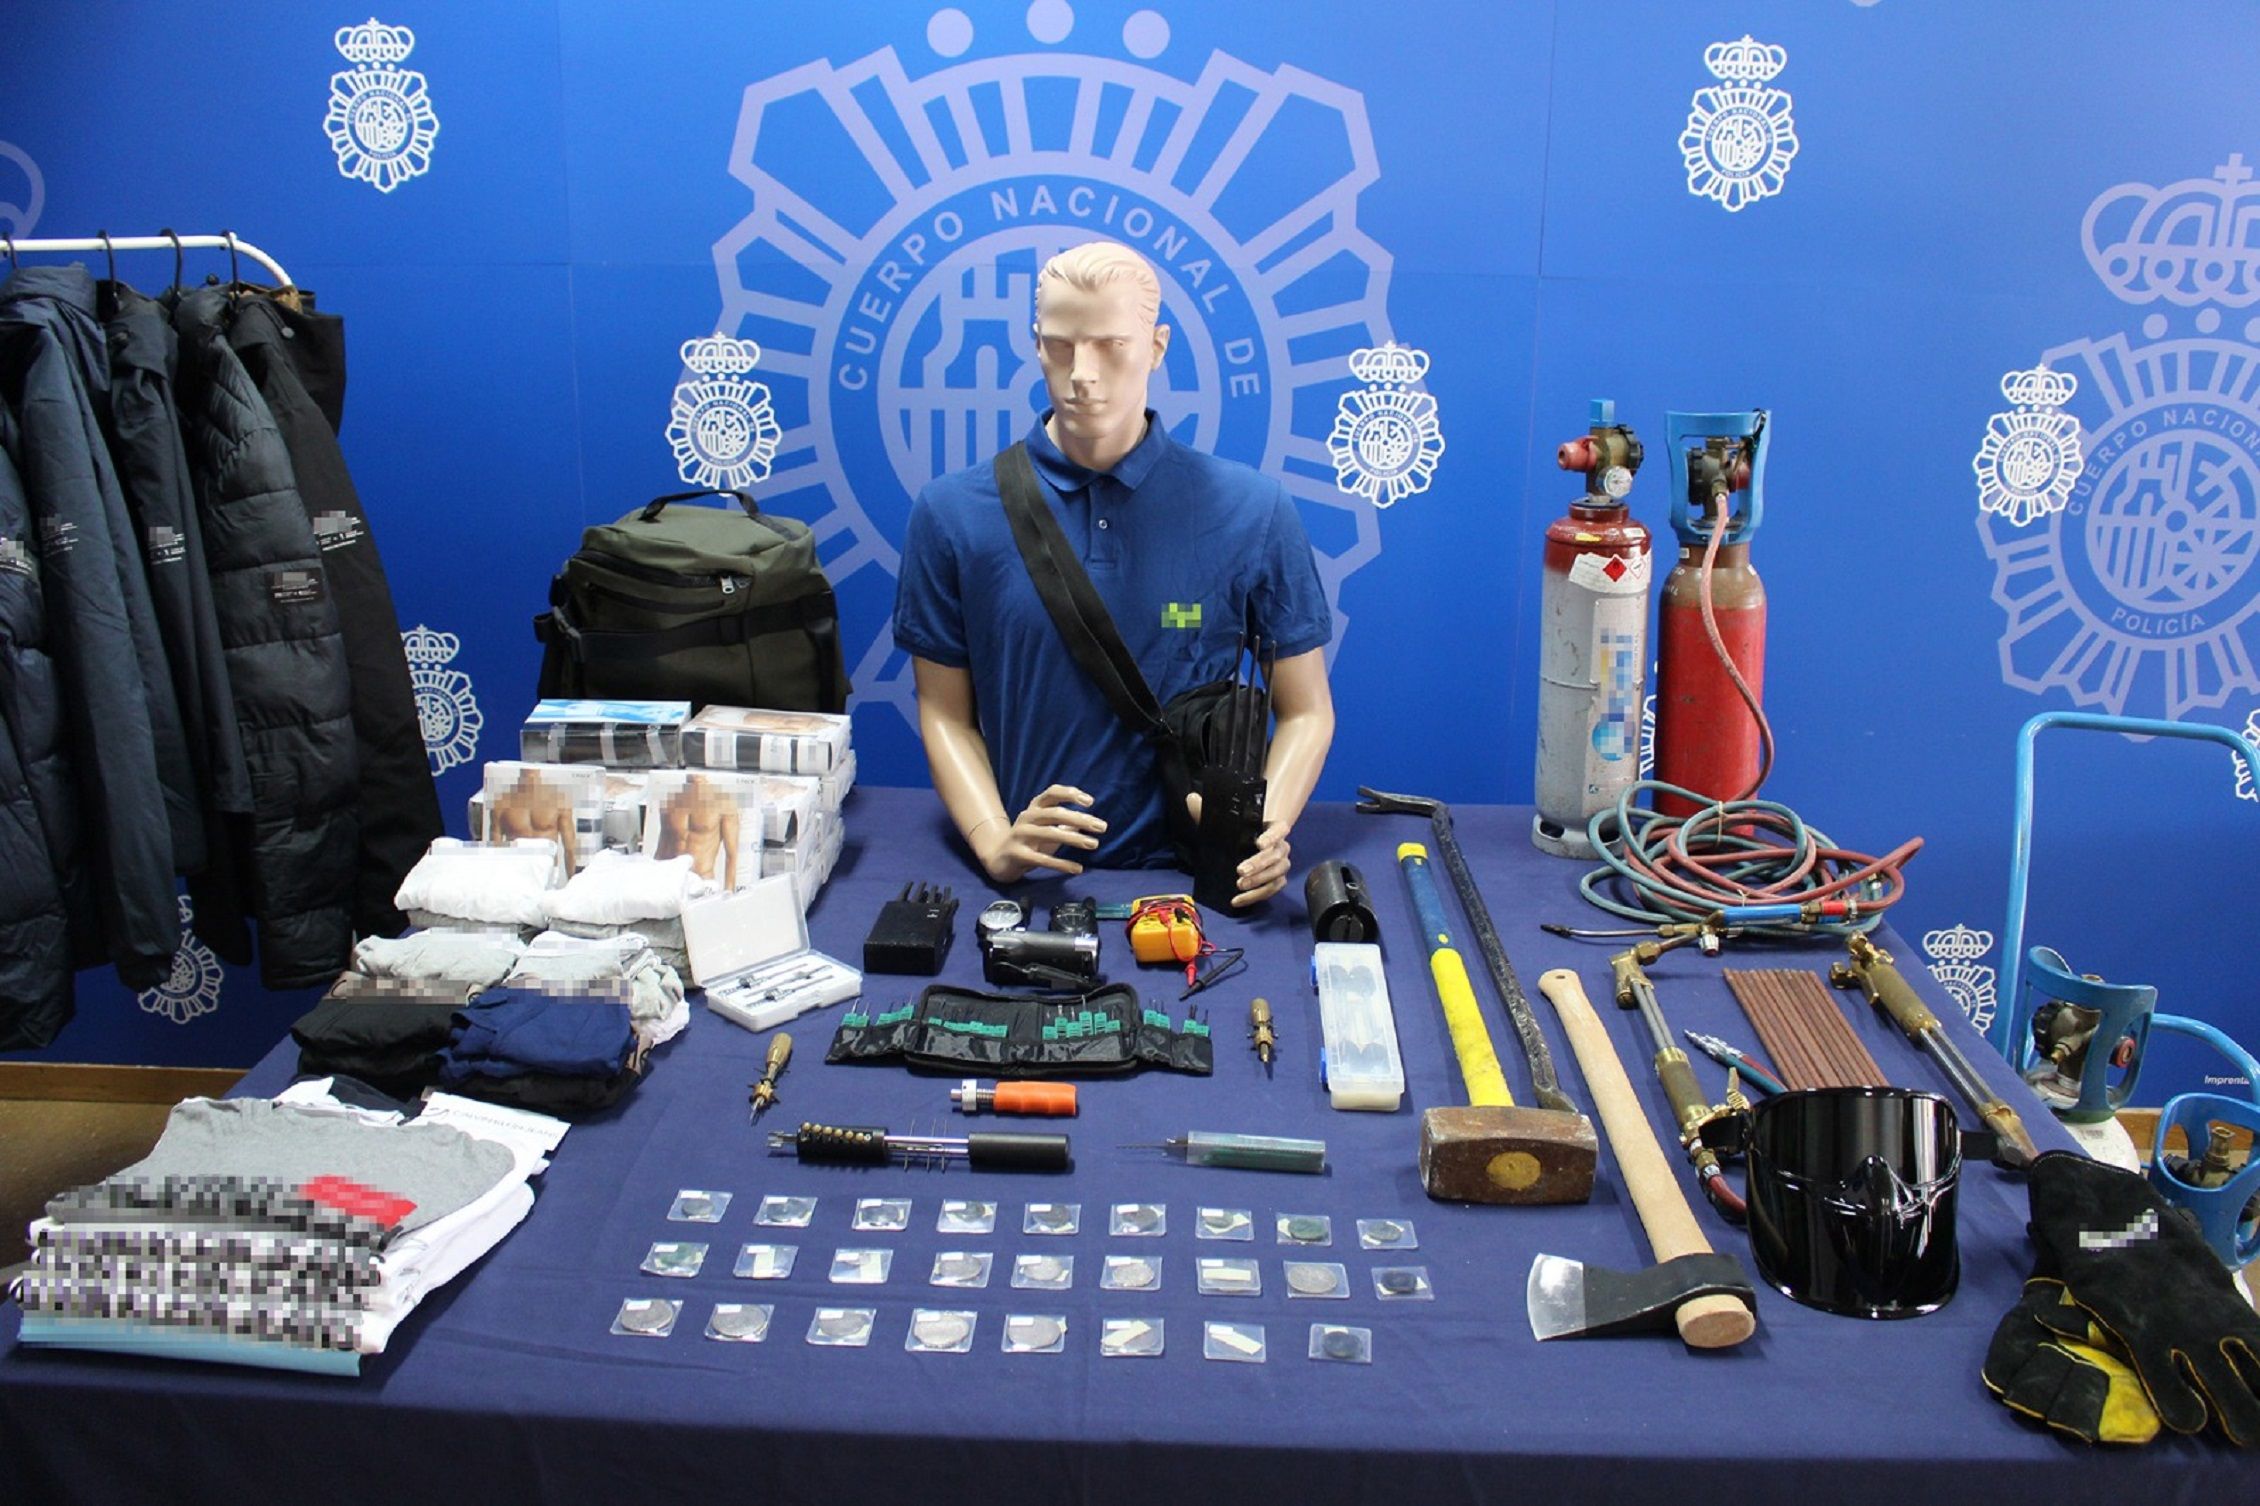 Ropa robada y monedas recuperadas en los registros / Policía Nacional